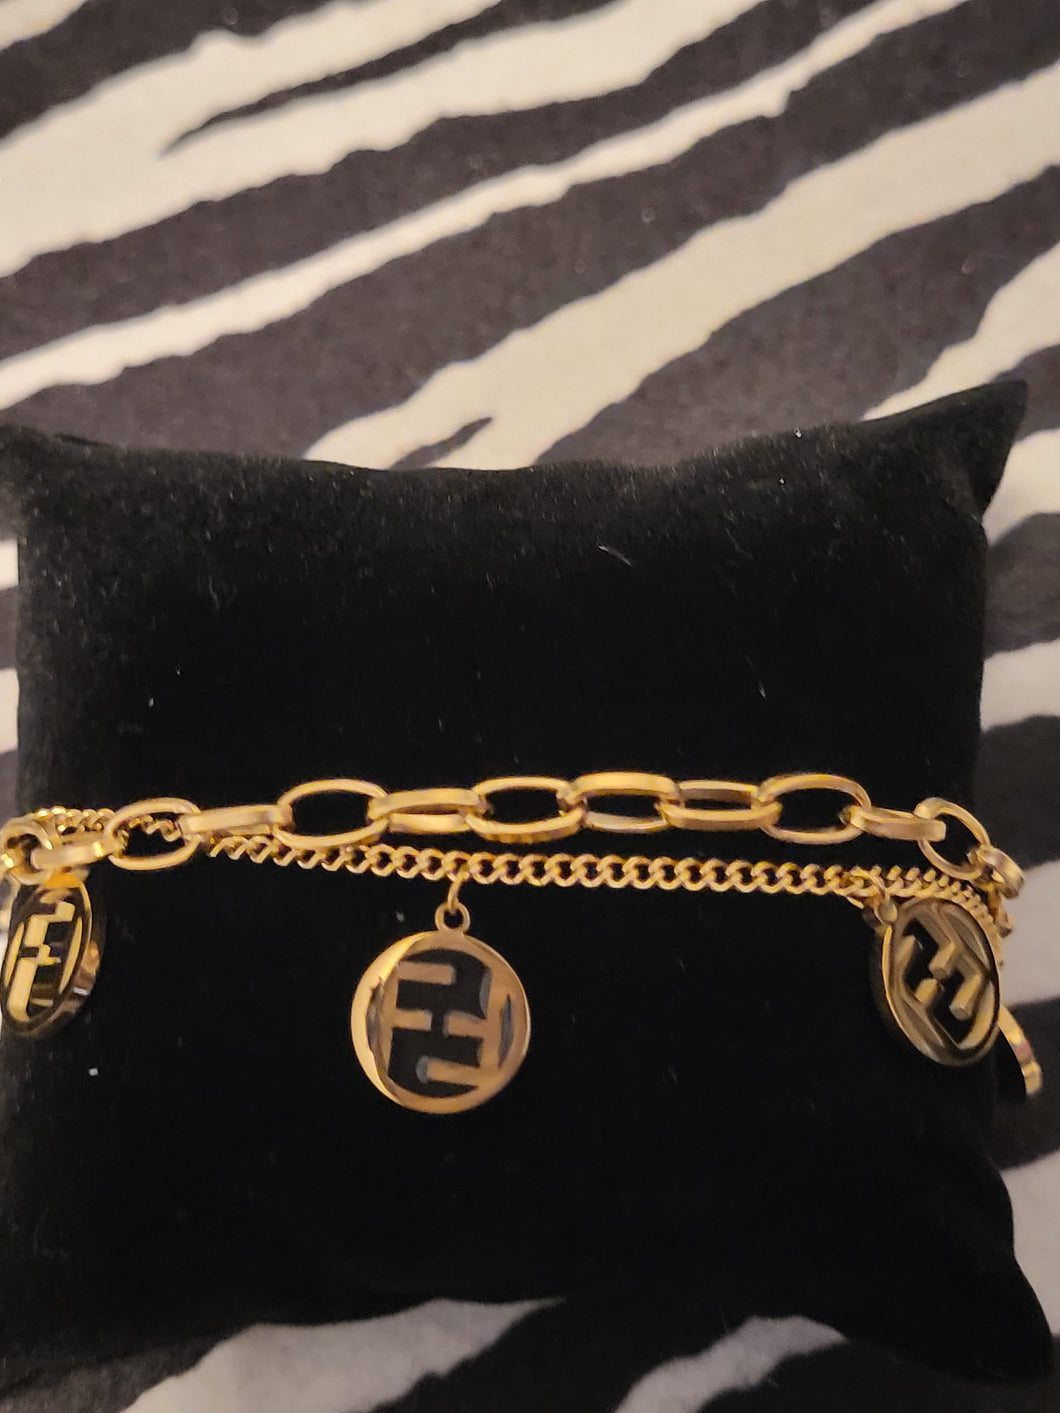 Stainless Steel Value Monogram VIP Black and Gold Charm Bracelet